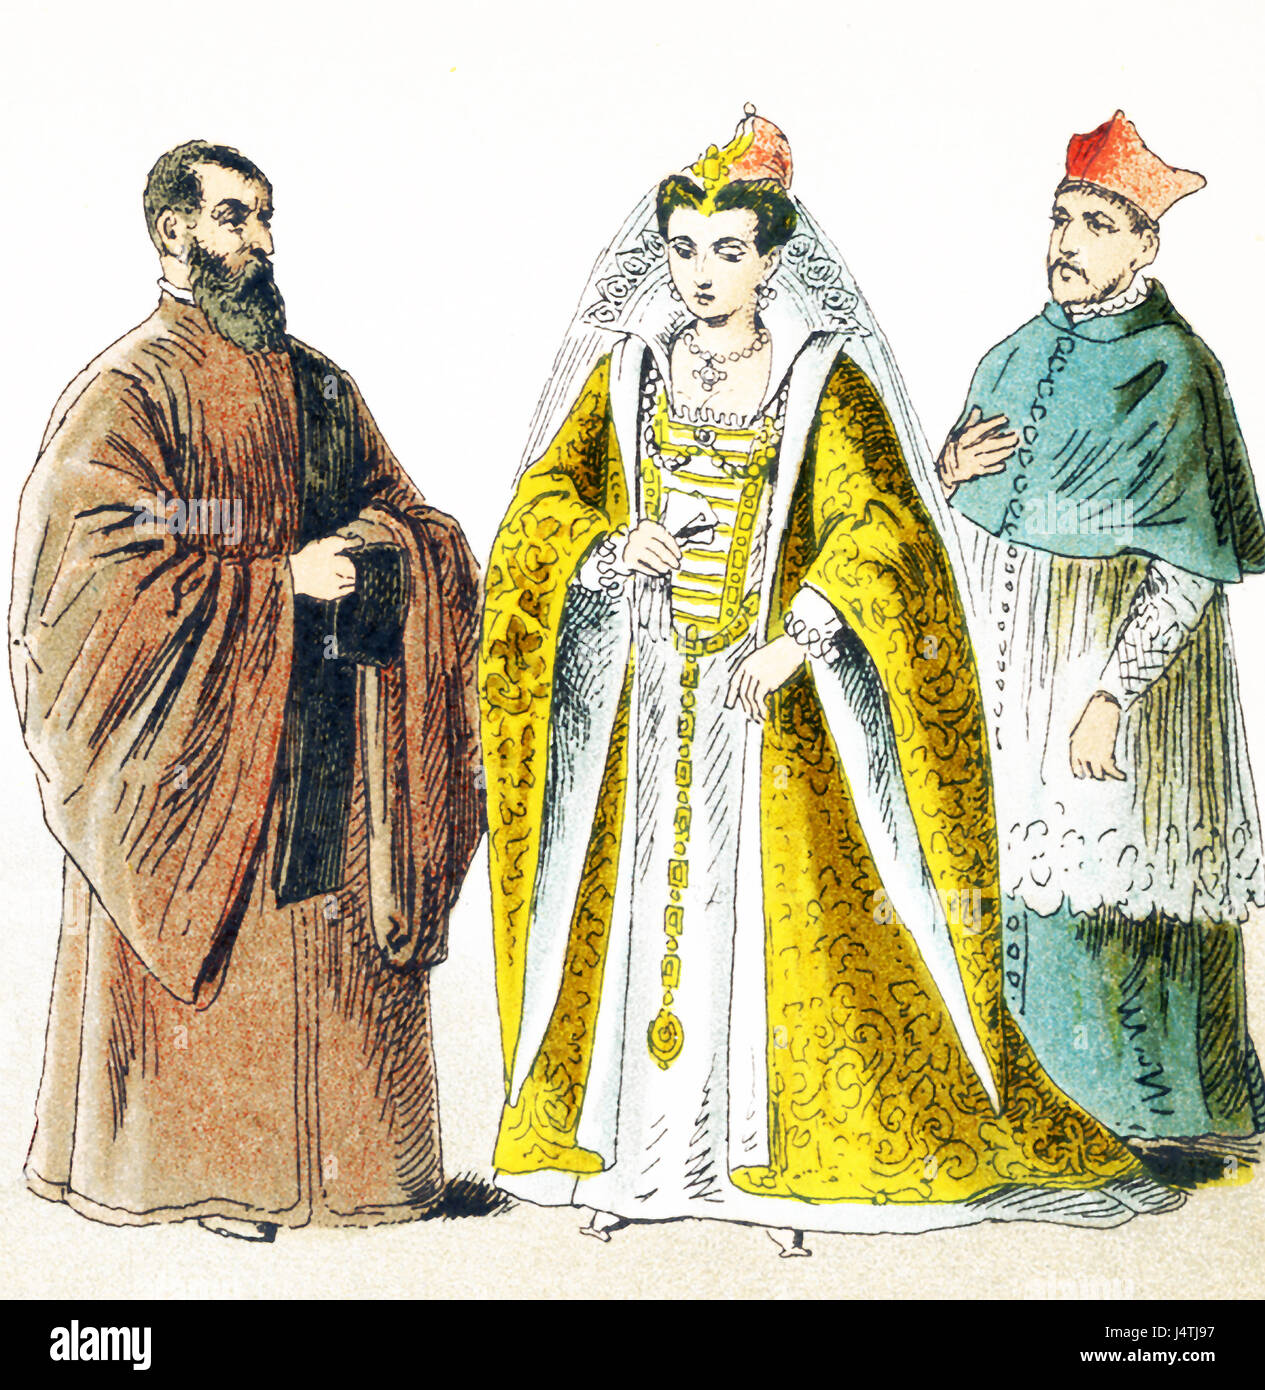 Les chiffres ci-dessus représentent les Italiens autour de 1500 A.D. Ils sont de gauche à droite : procurateur de Saint-Marc, épouse du Doge, le cardinal en robe de chambre. L'illustration dates à 1882. Banque D'Images